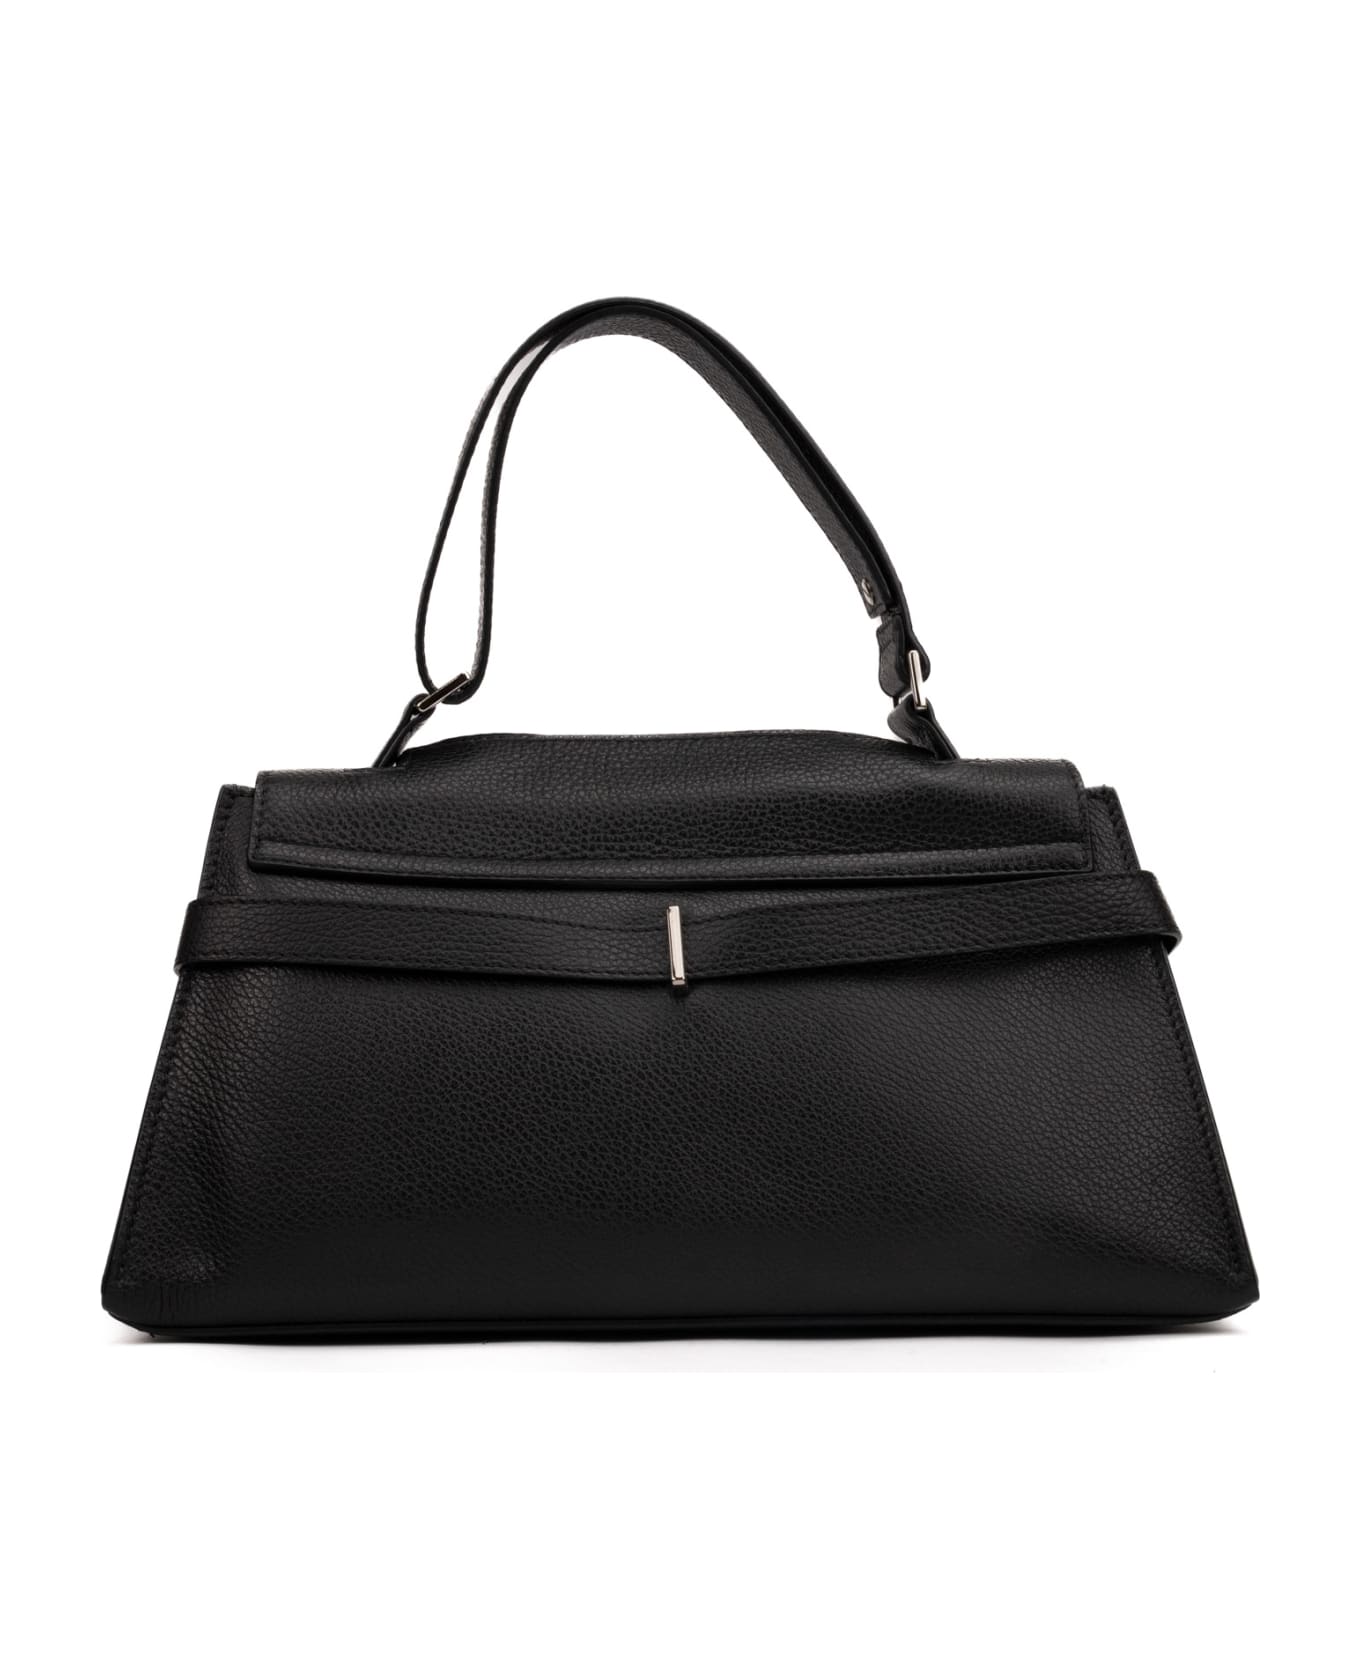 Orciani Sveva Longuette Sense Bag In Black Leather - Nero